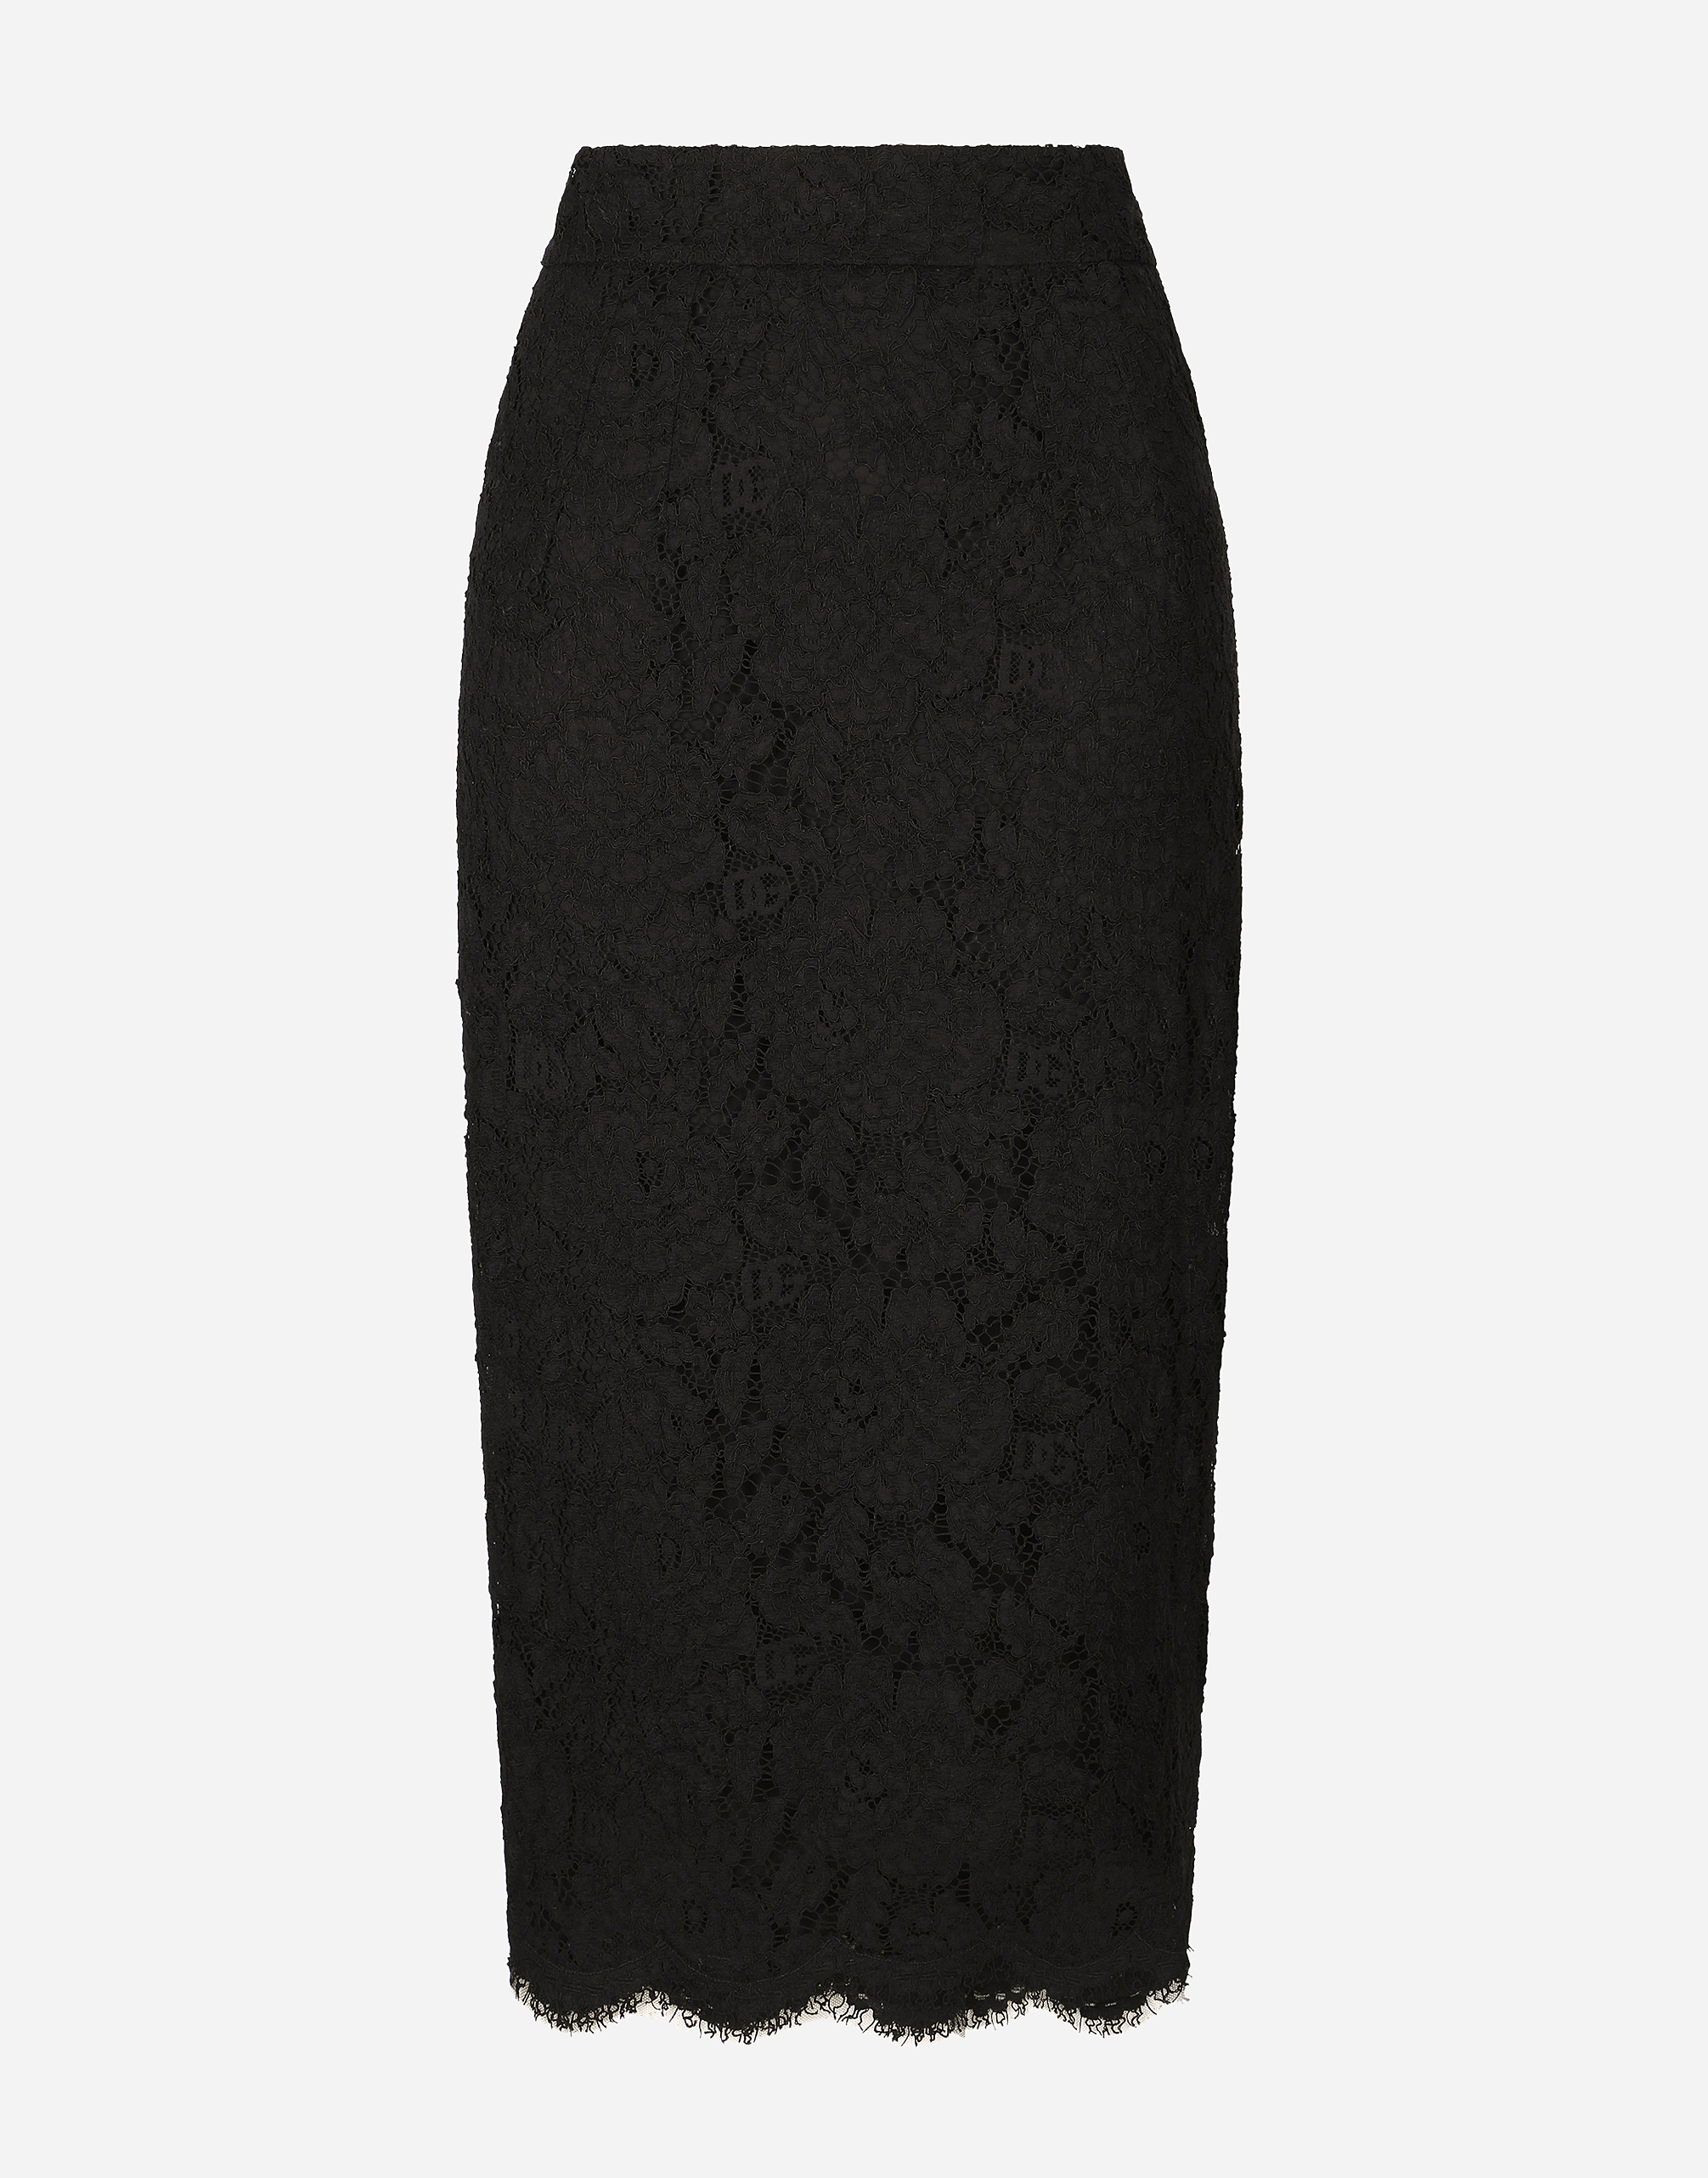 Dolce & Gabbana Branded Stretch Lace Midi Skirt In Black